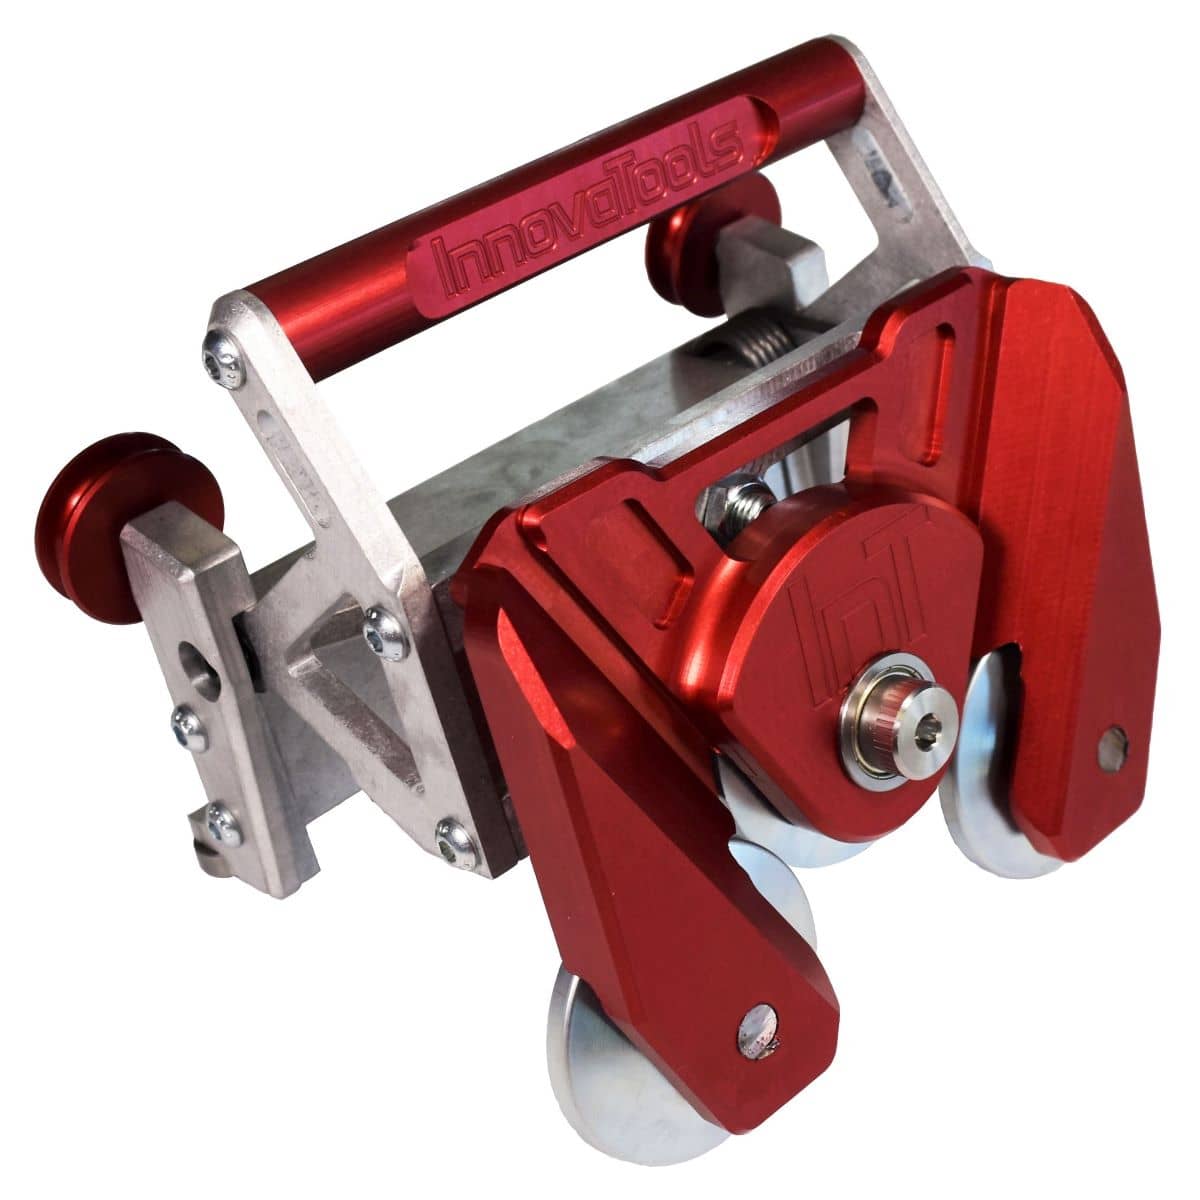 2-Wege-Schneidwerkzeug für Aluminiumseitenbremsen Version 2.0 - Mit rot eloxiertem Körper mit eingraviertem Firmennamen und Logo